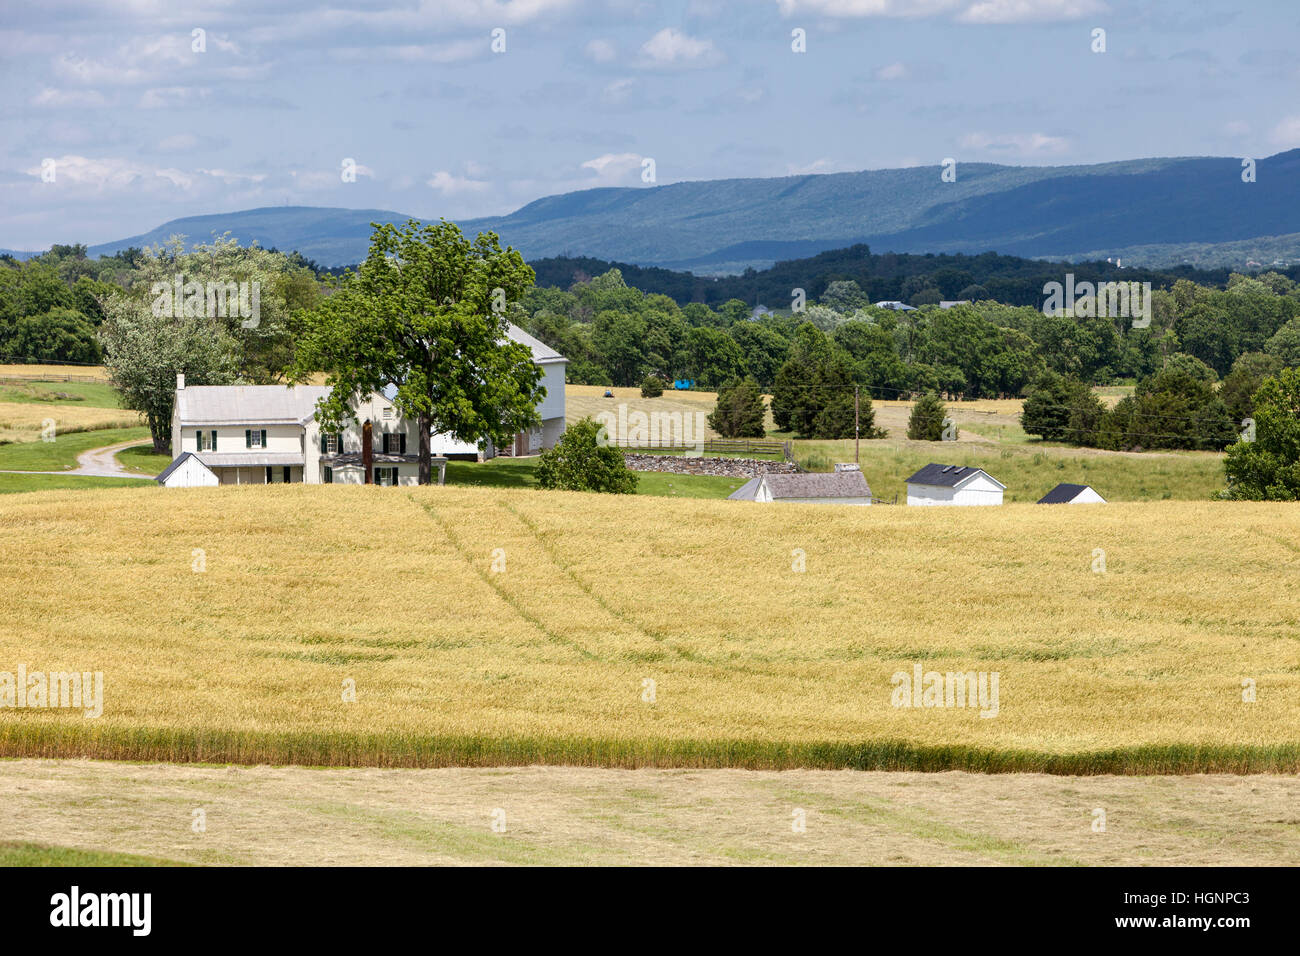 Campo di battaglia di Antietam, Maryland. Campi coltivati oggi coprire il campo di battaglia. Mumma agriturismo sulla sinistra. Foto Stock